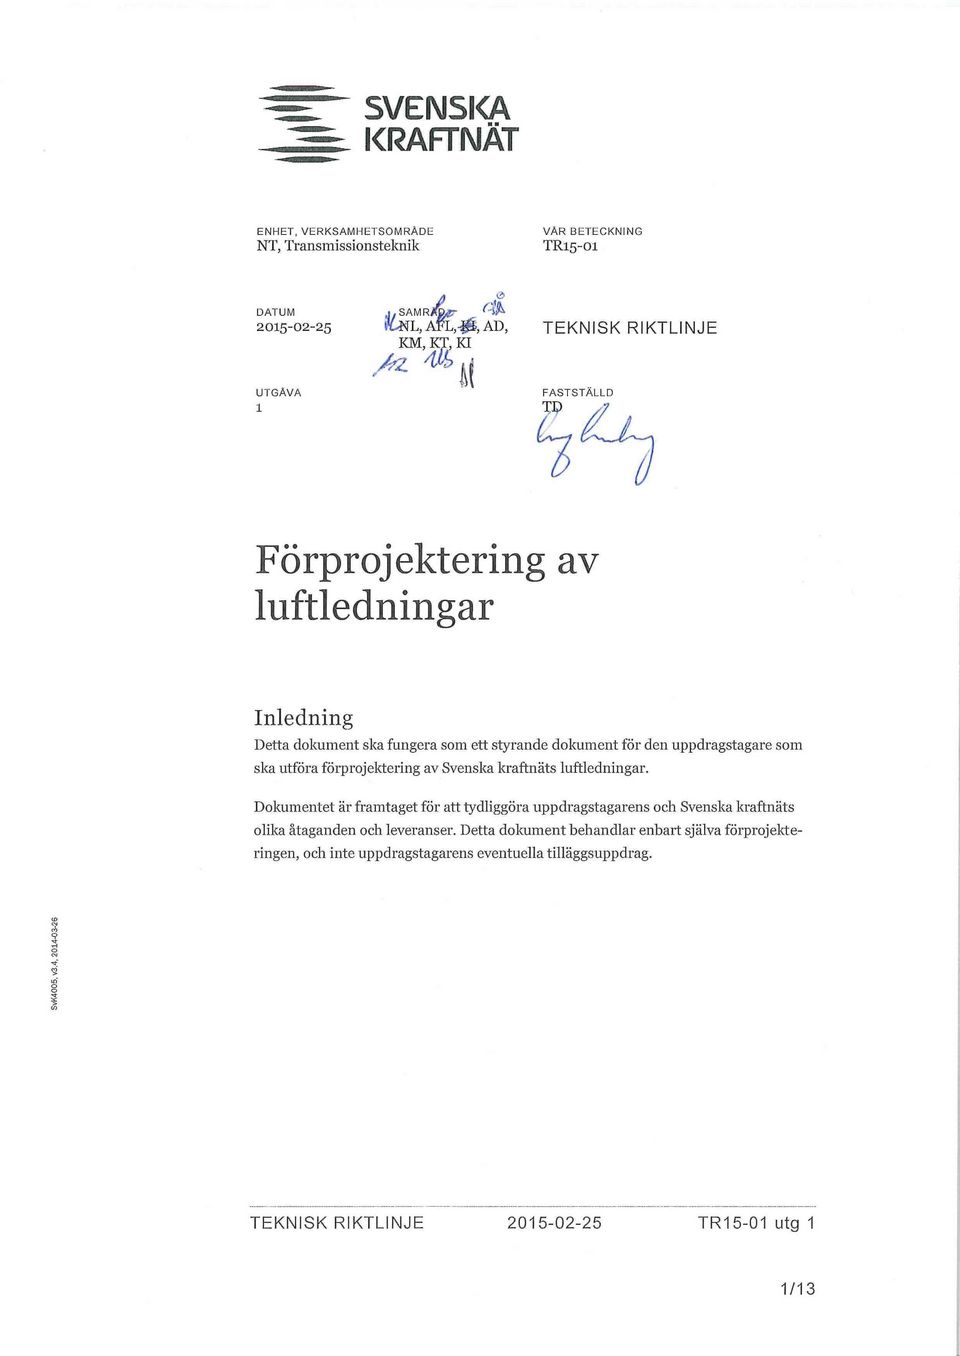 ett styrande dokument för den uppdragstagare som ska utföra förprojektering av Svenska kraftnäts luftledningar.